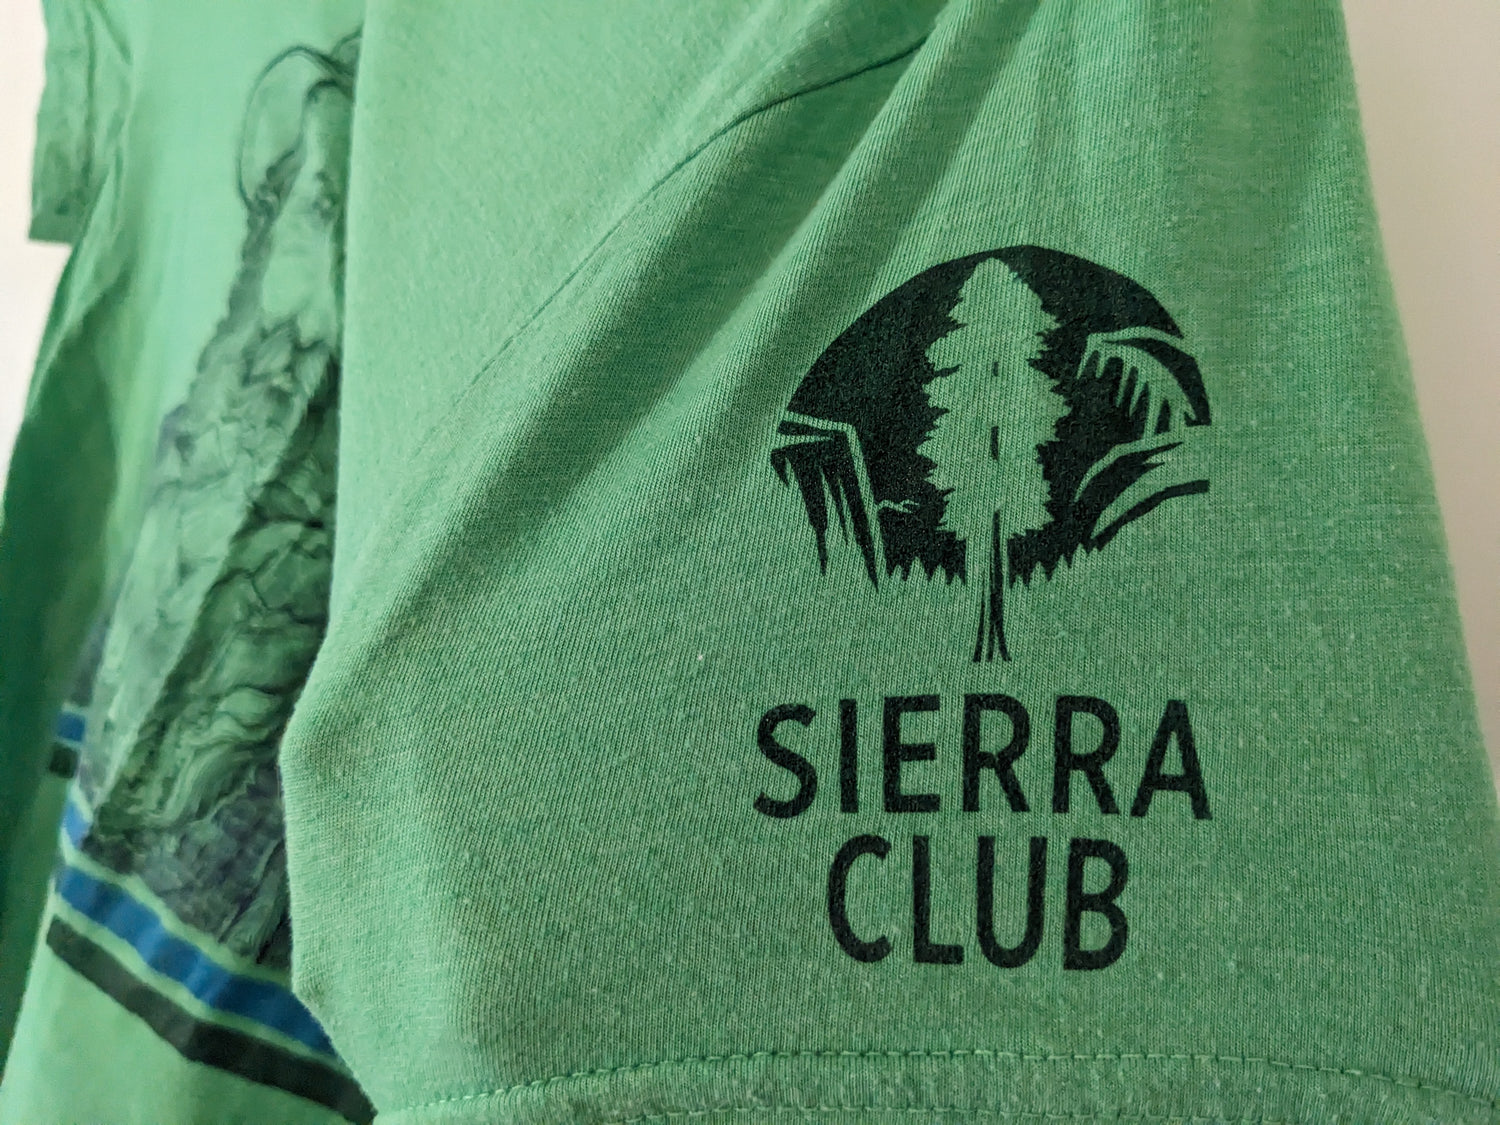 Sierra Club logo on sleeve